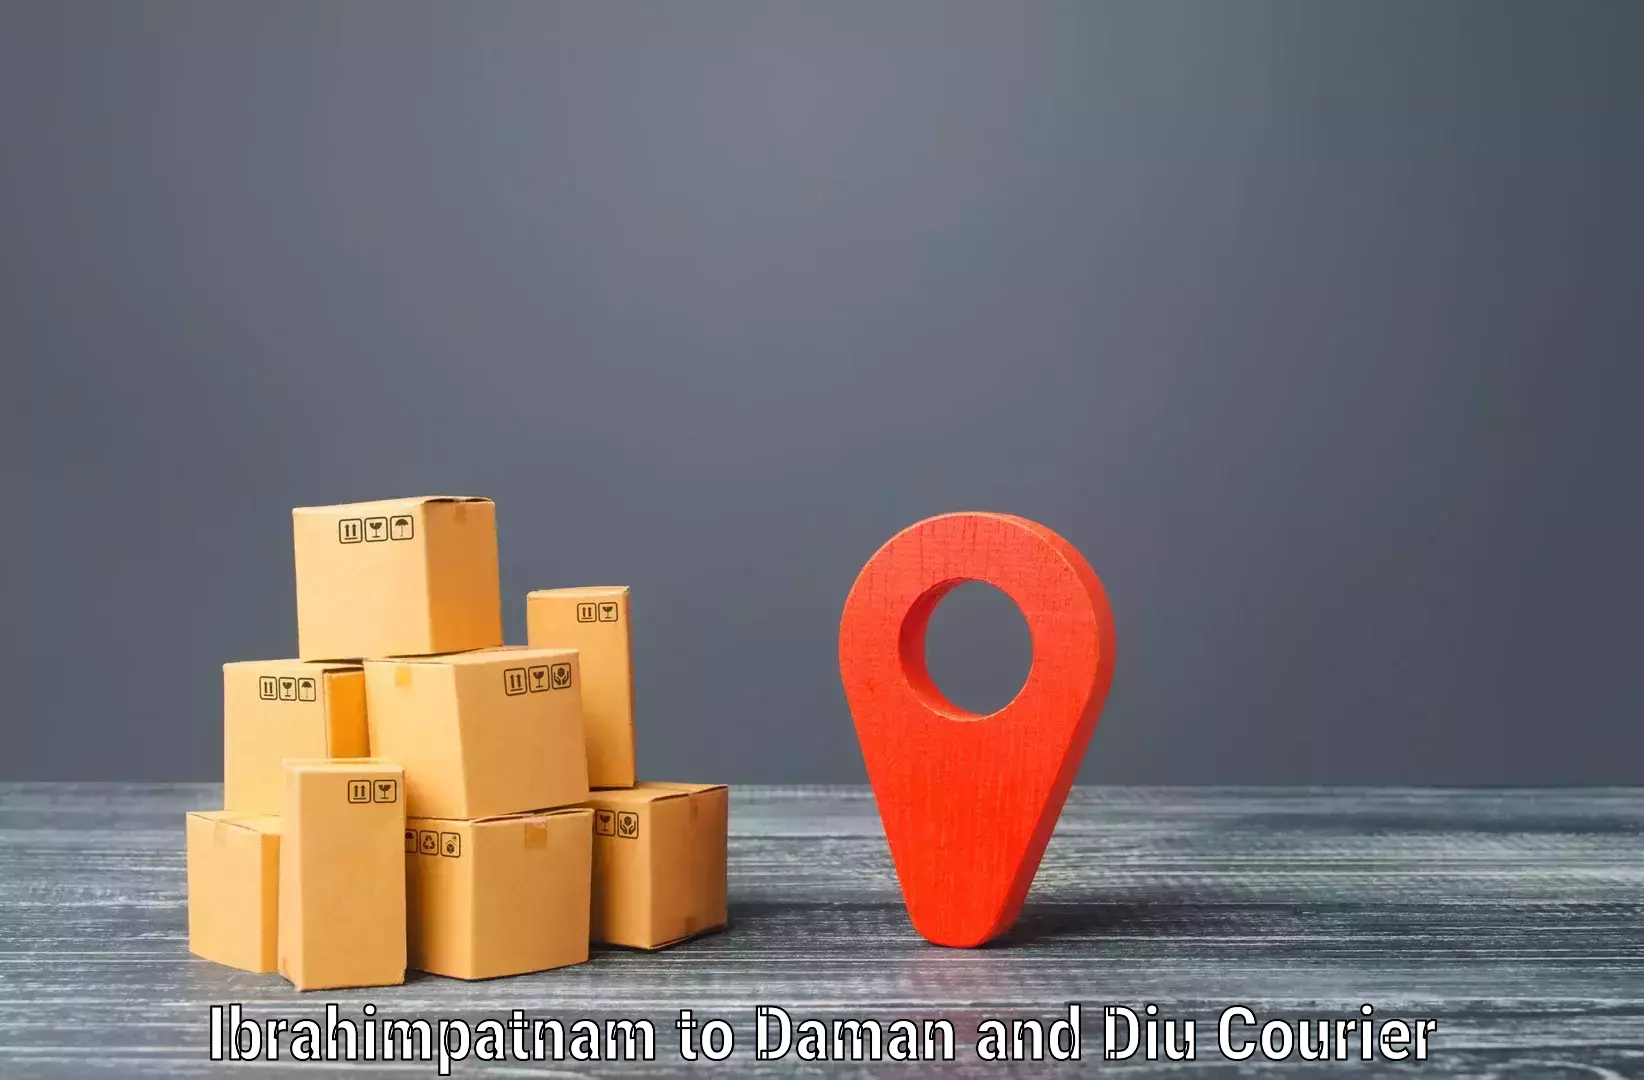 Efficient freight transportation Ibrahimpatnam to Daman and Diu